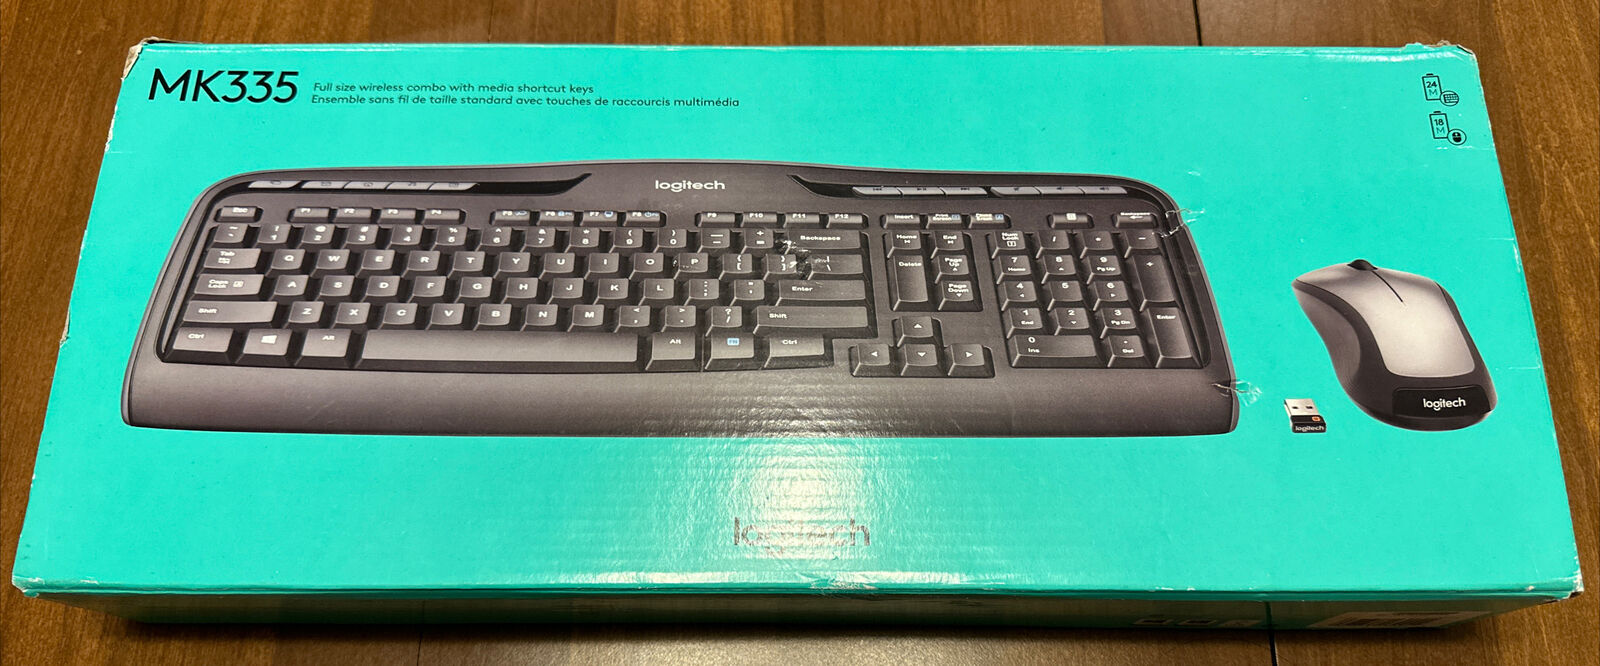 Logitech MK335 Wireless Keyboard And Mouse Combo Black 920-008478 Open Box